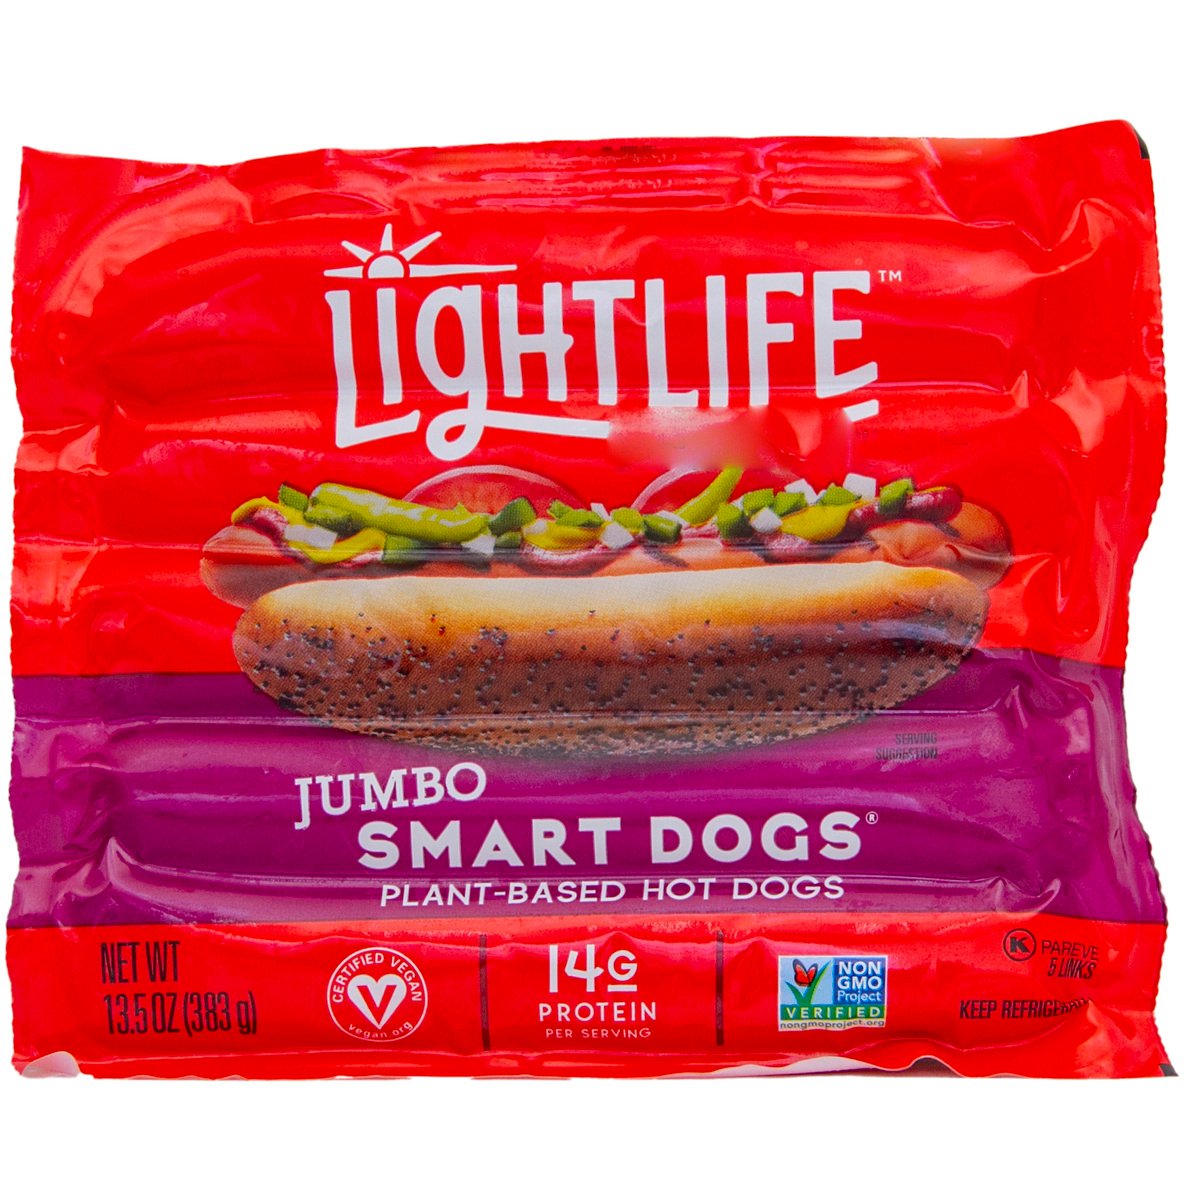 Light Life Smart Dogs Veggie 383 g